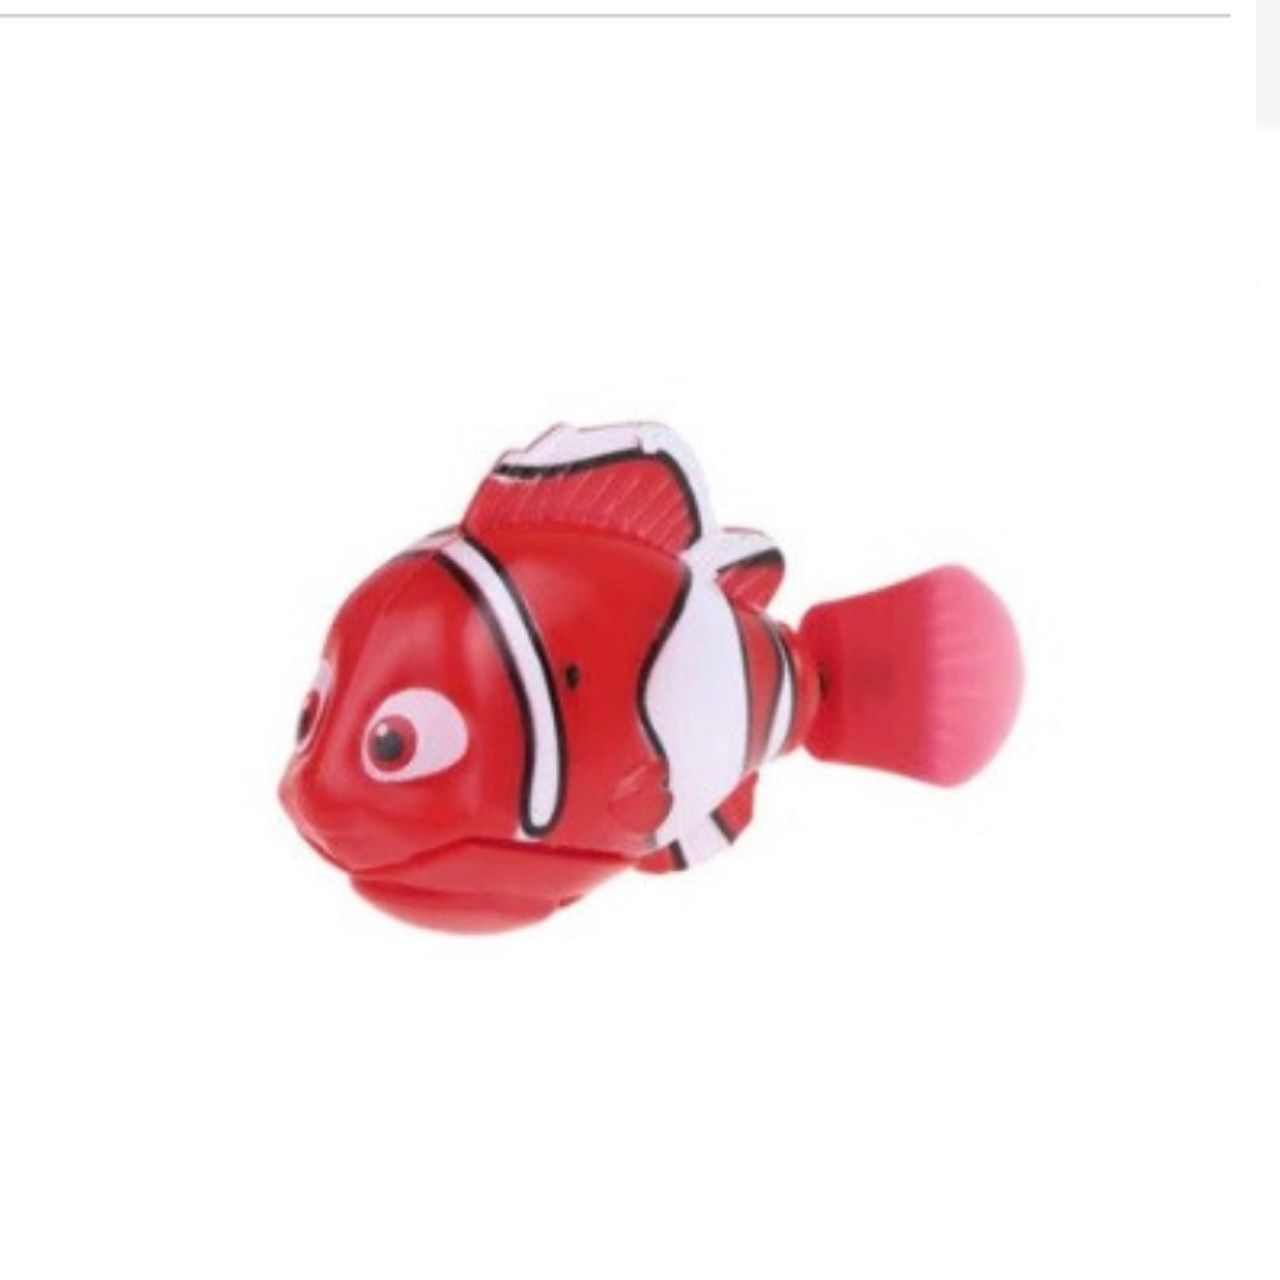 Інтерактивна іграшка рибка-робот (роборыбка) Nano Robo Fish В пошуках Немо